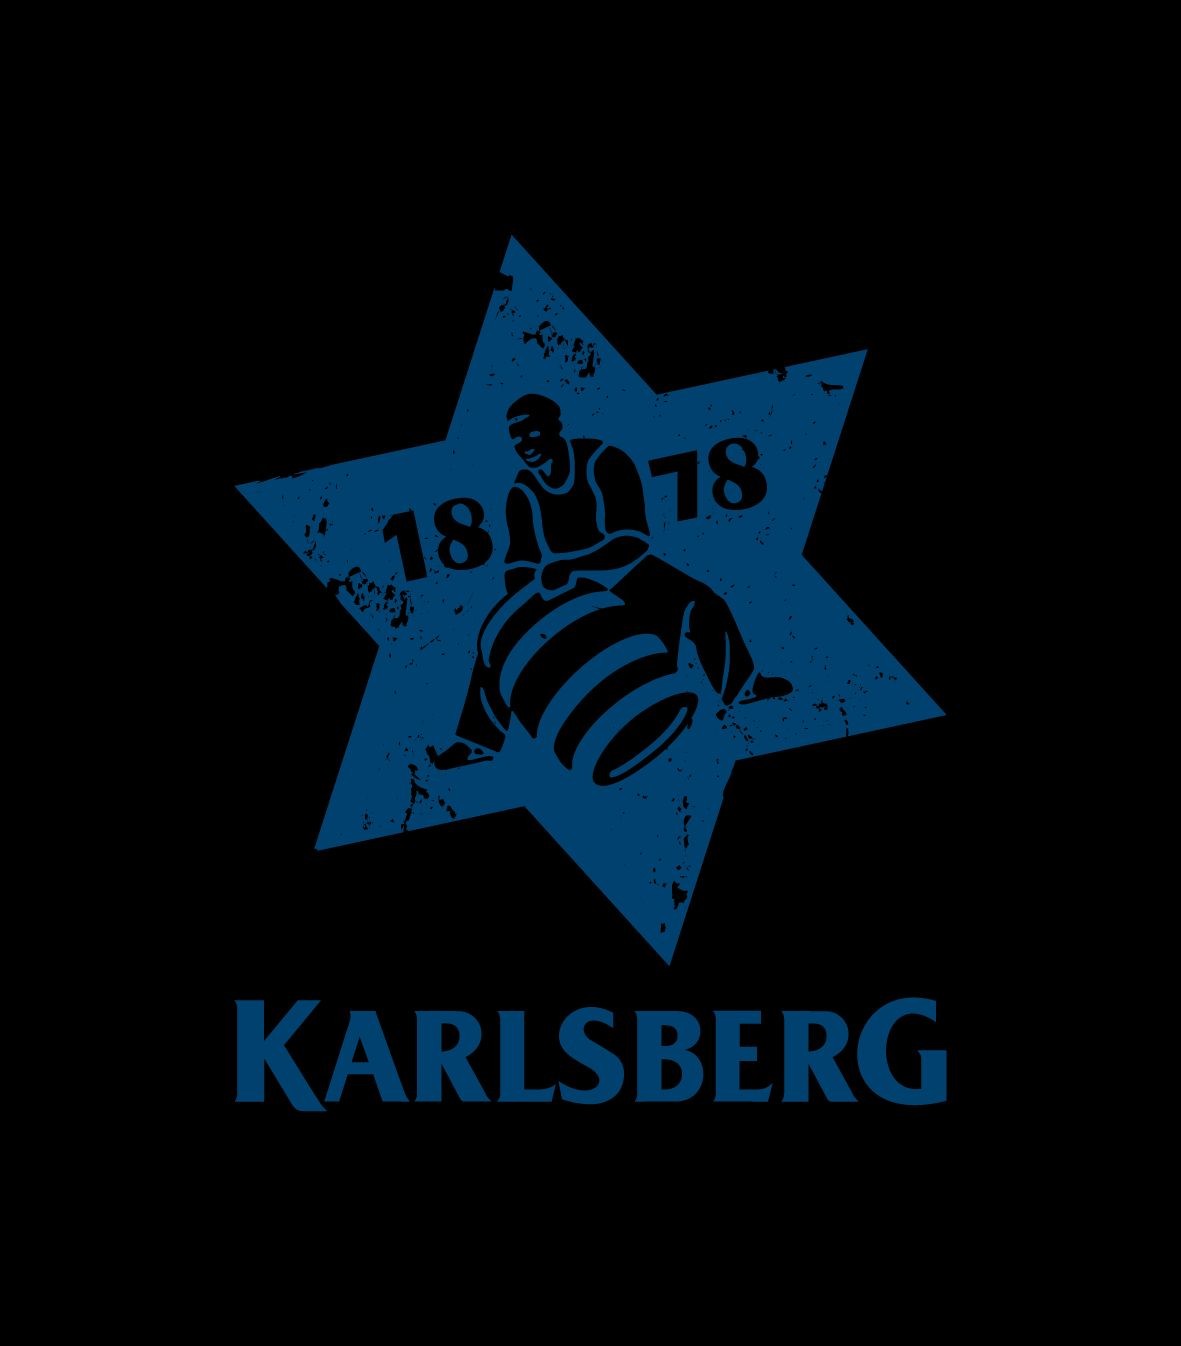 KarlsbergBrauerei